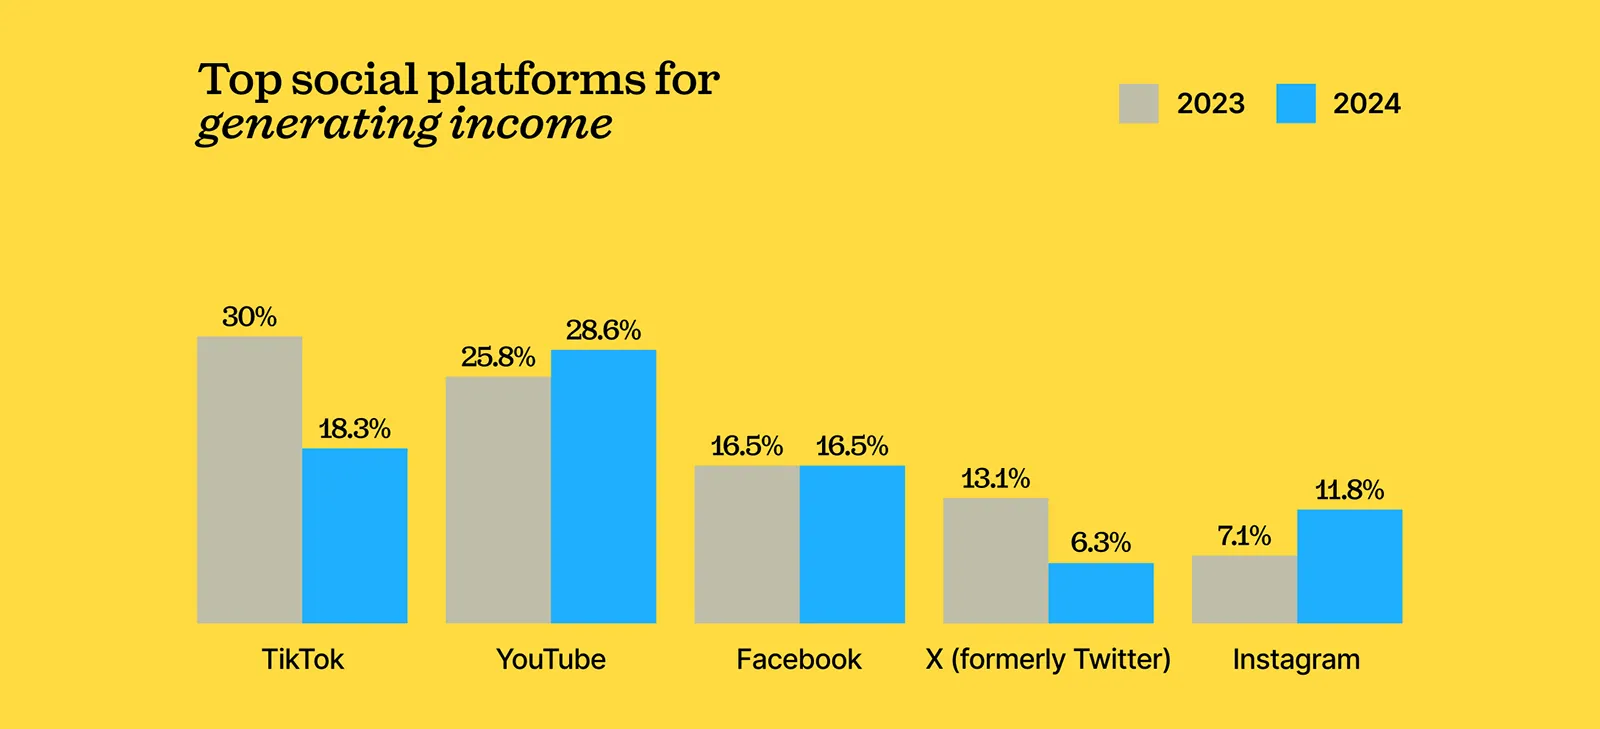 Top social platforms